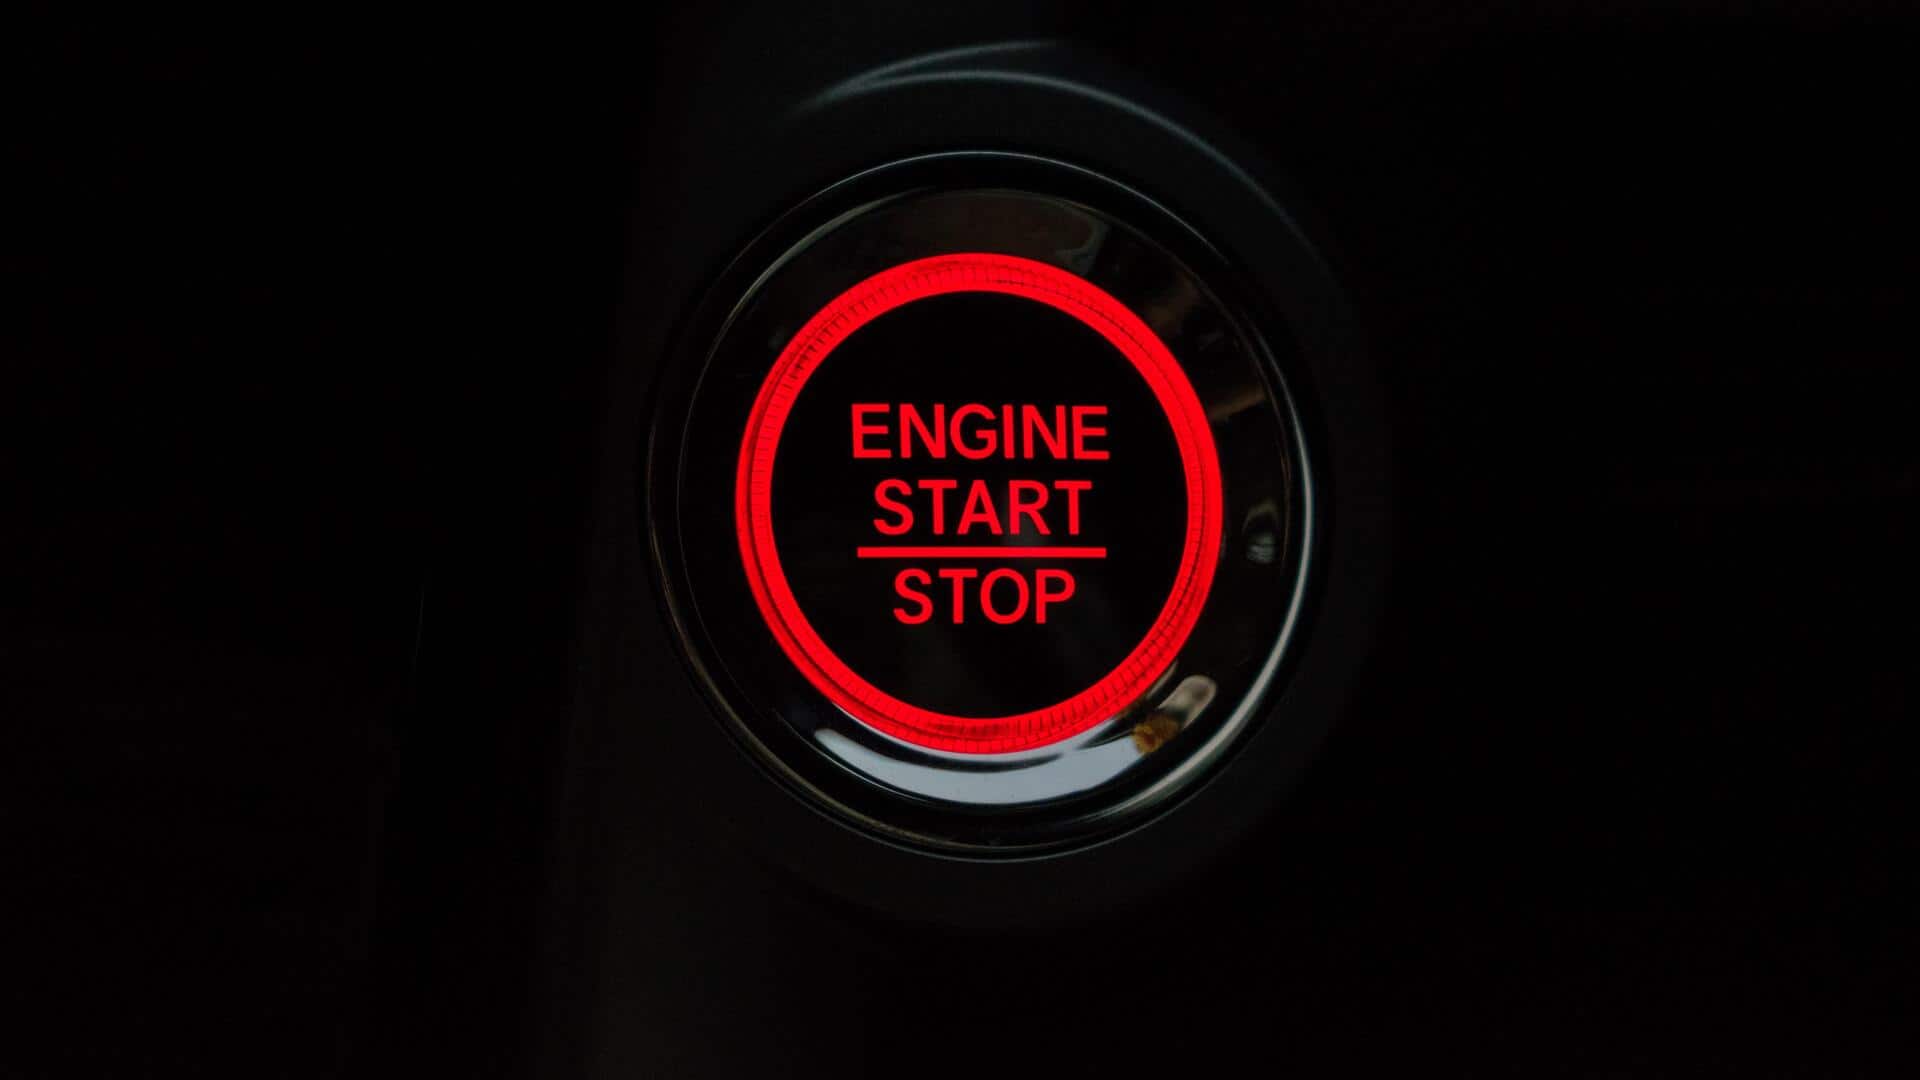 सर्दियों में कार चलाने से पहले इंजन गर्म करना जरूरी? जानिए क्या है हकीकत 